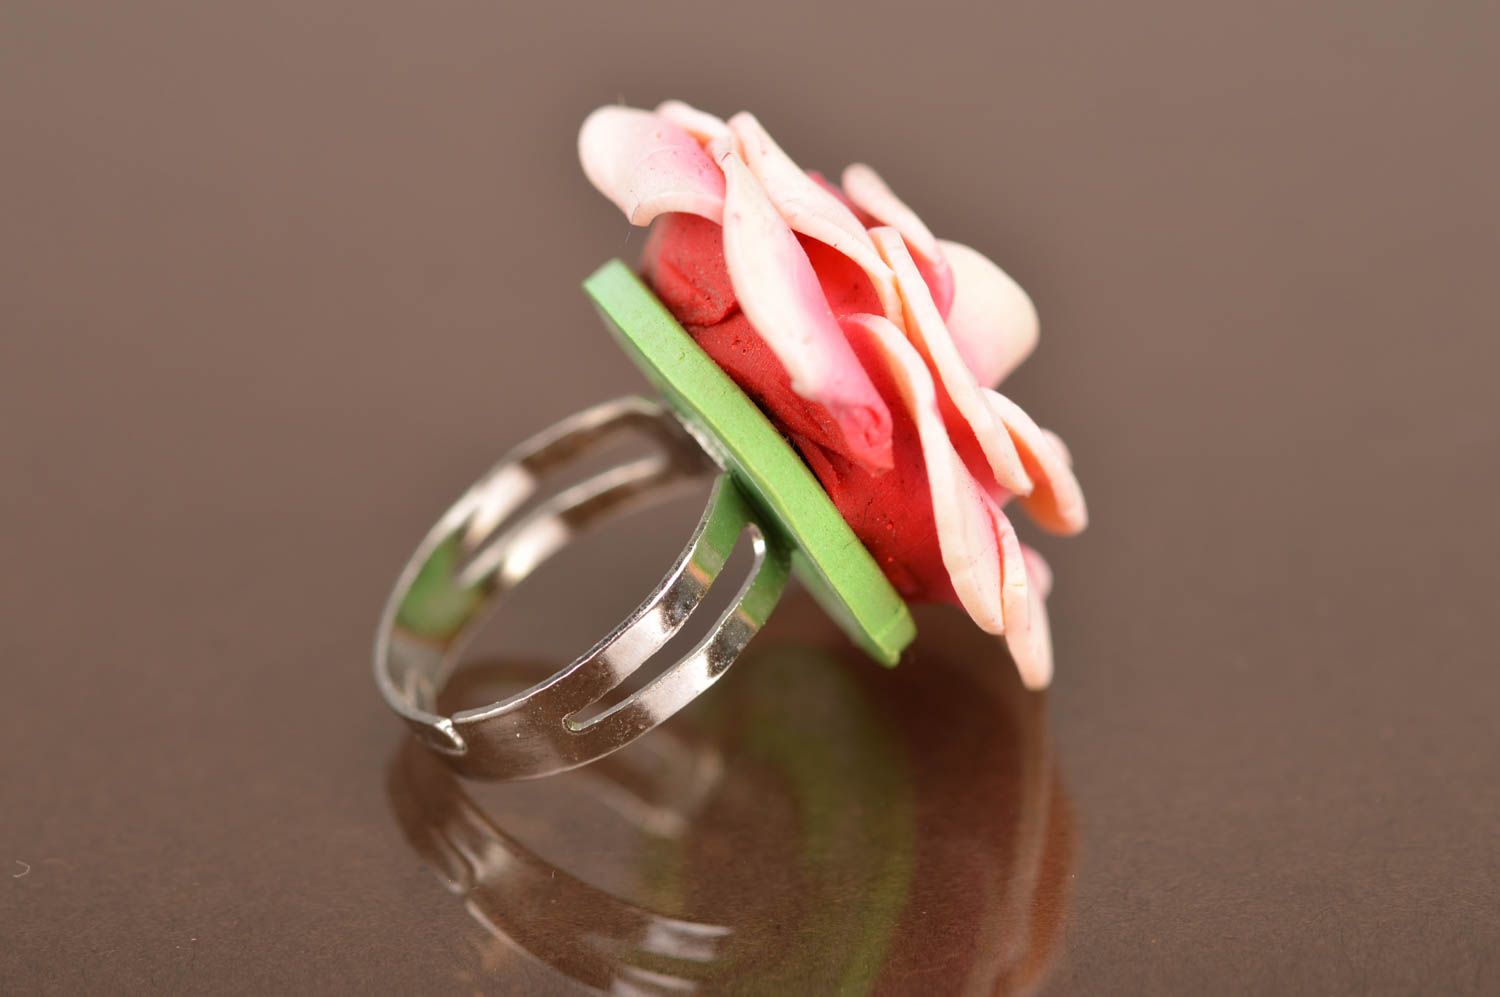 Кольцо цветок из полимерной глины розовое в виде розы крупное ручная работа фото 4